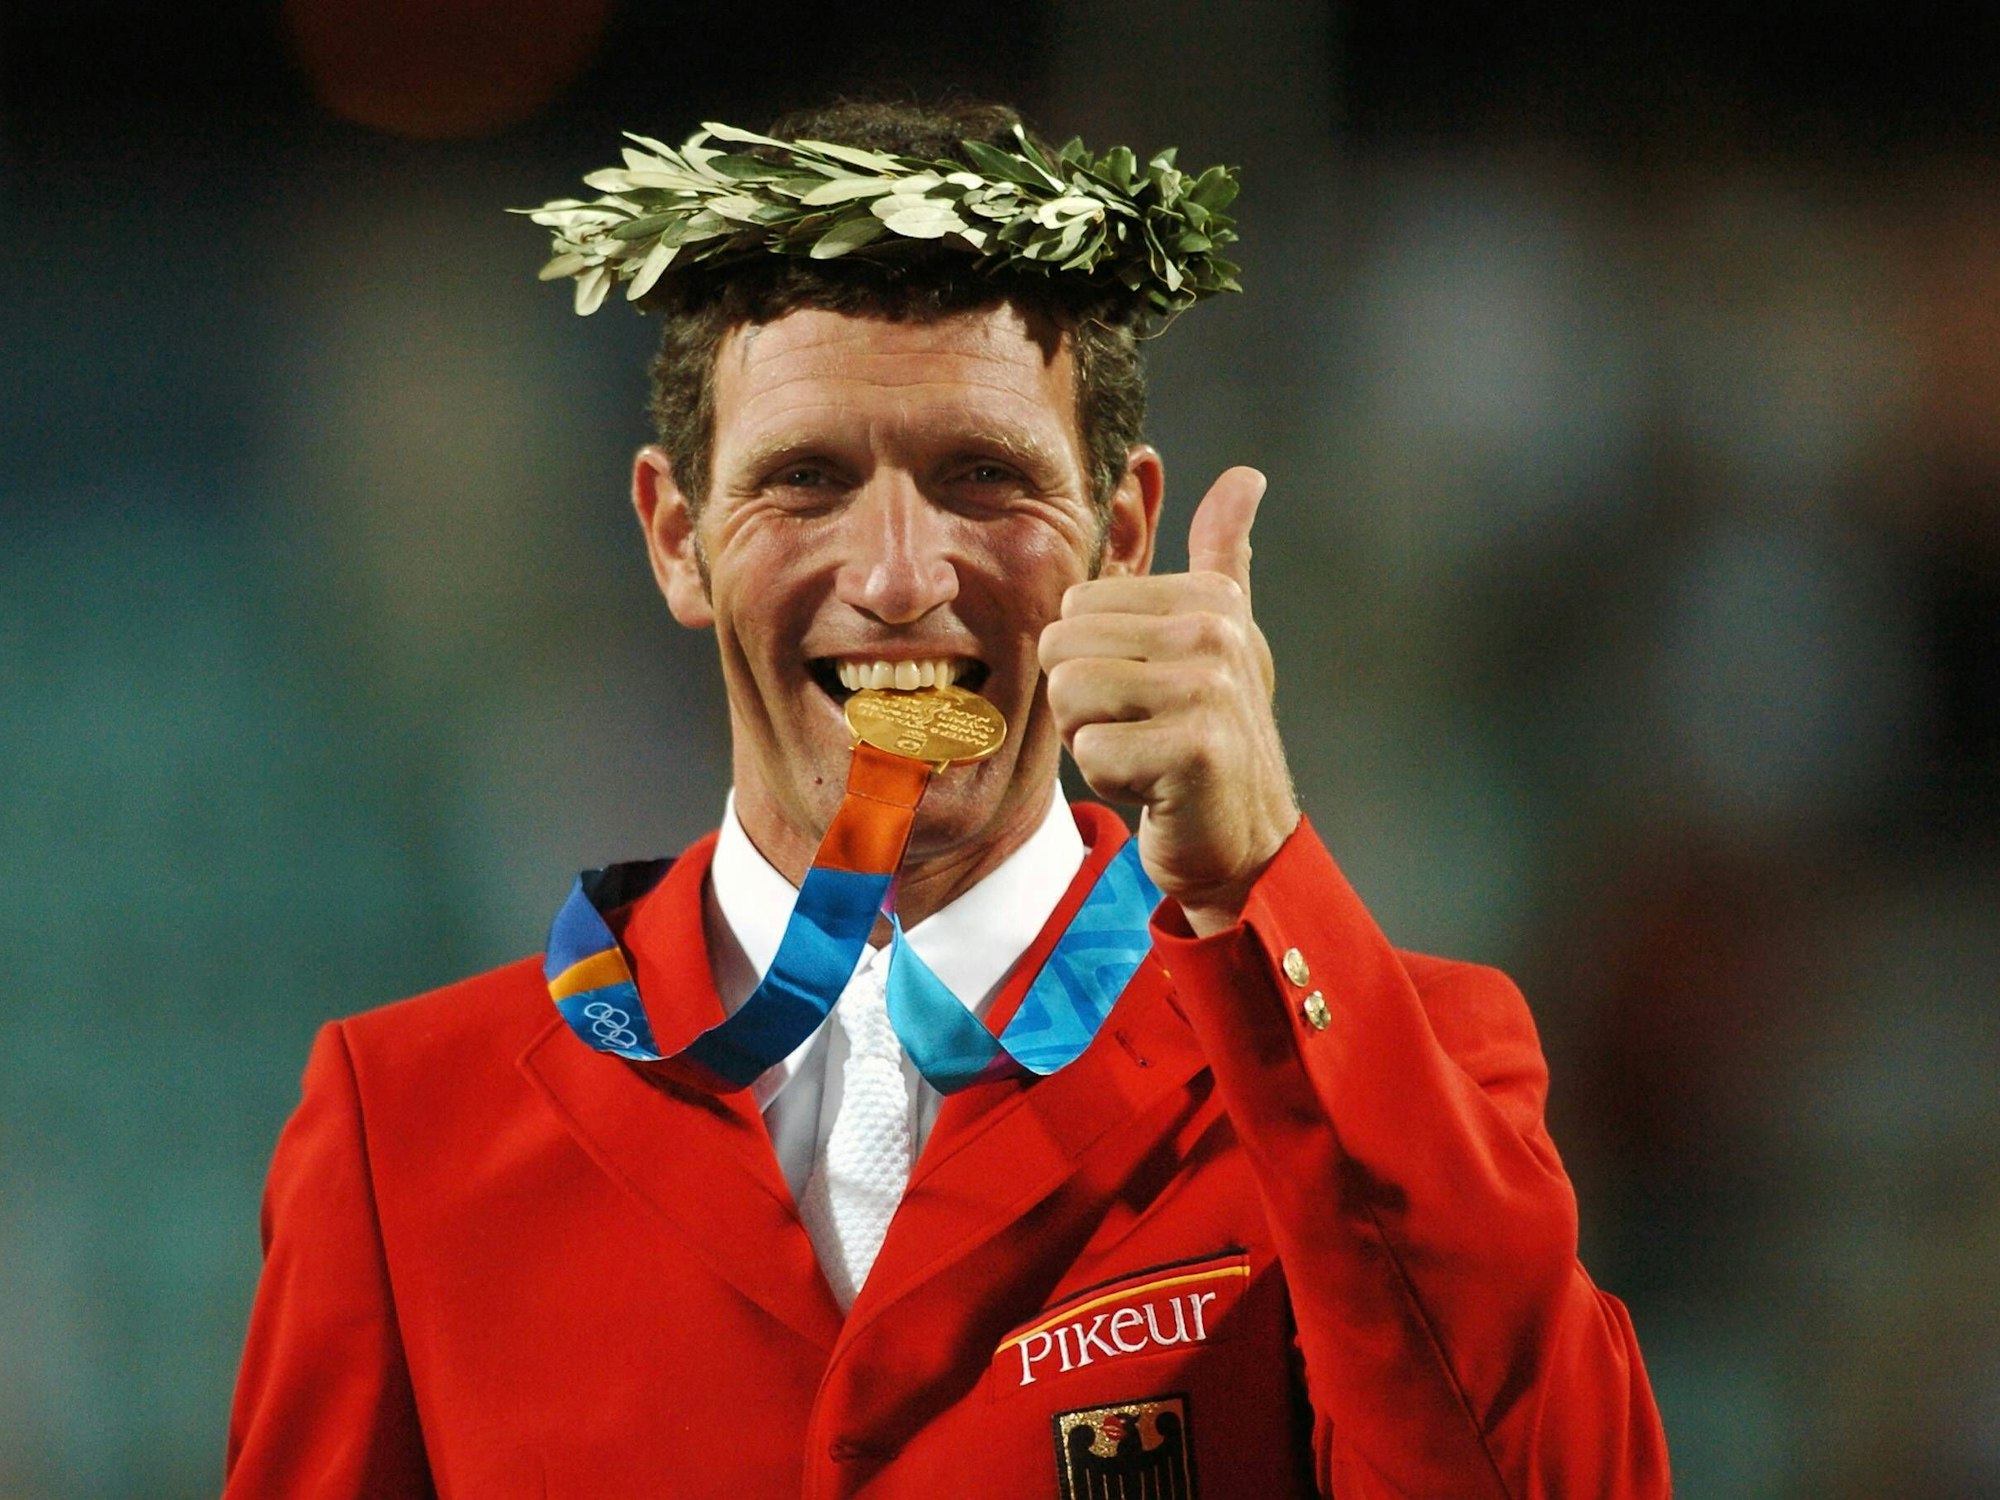 Ludger Beerbaum (Deutschland) - Olympiasieger in der Teamwertung bei den Olympischen Sommerspielen 2004 - beißt glücklich in seine Goldmedaille